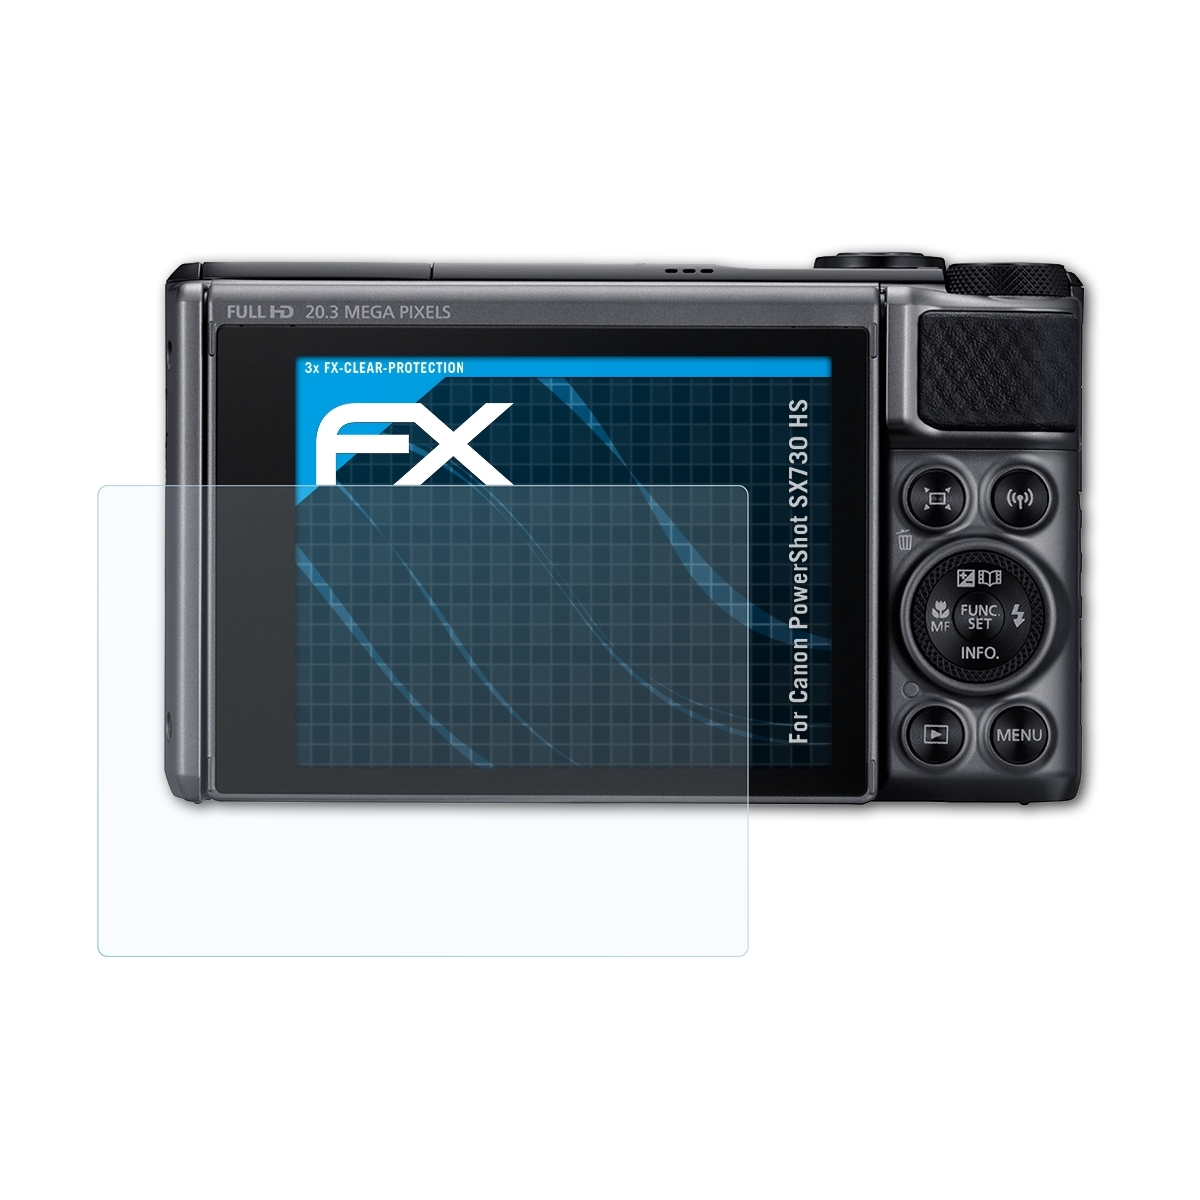 Displayschutz(für PowerShot Canon SX730 HS) FX-Clear 3x ATFOLIX